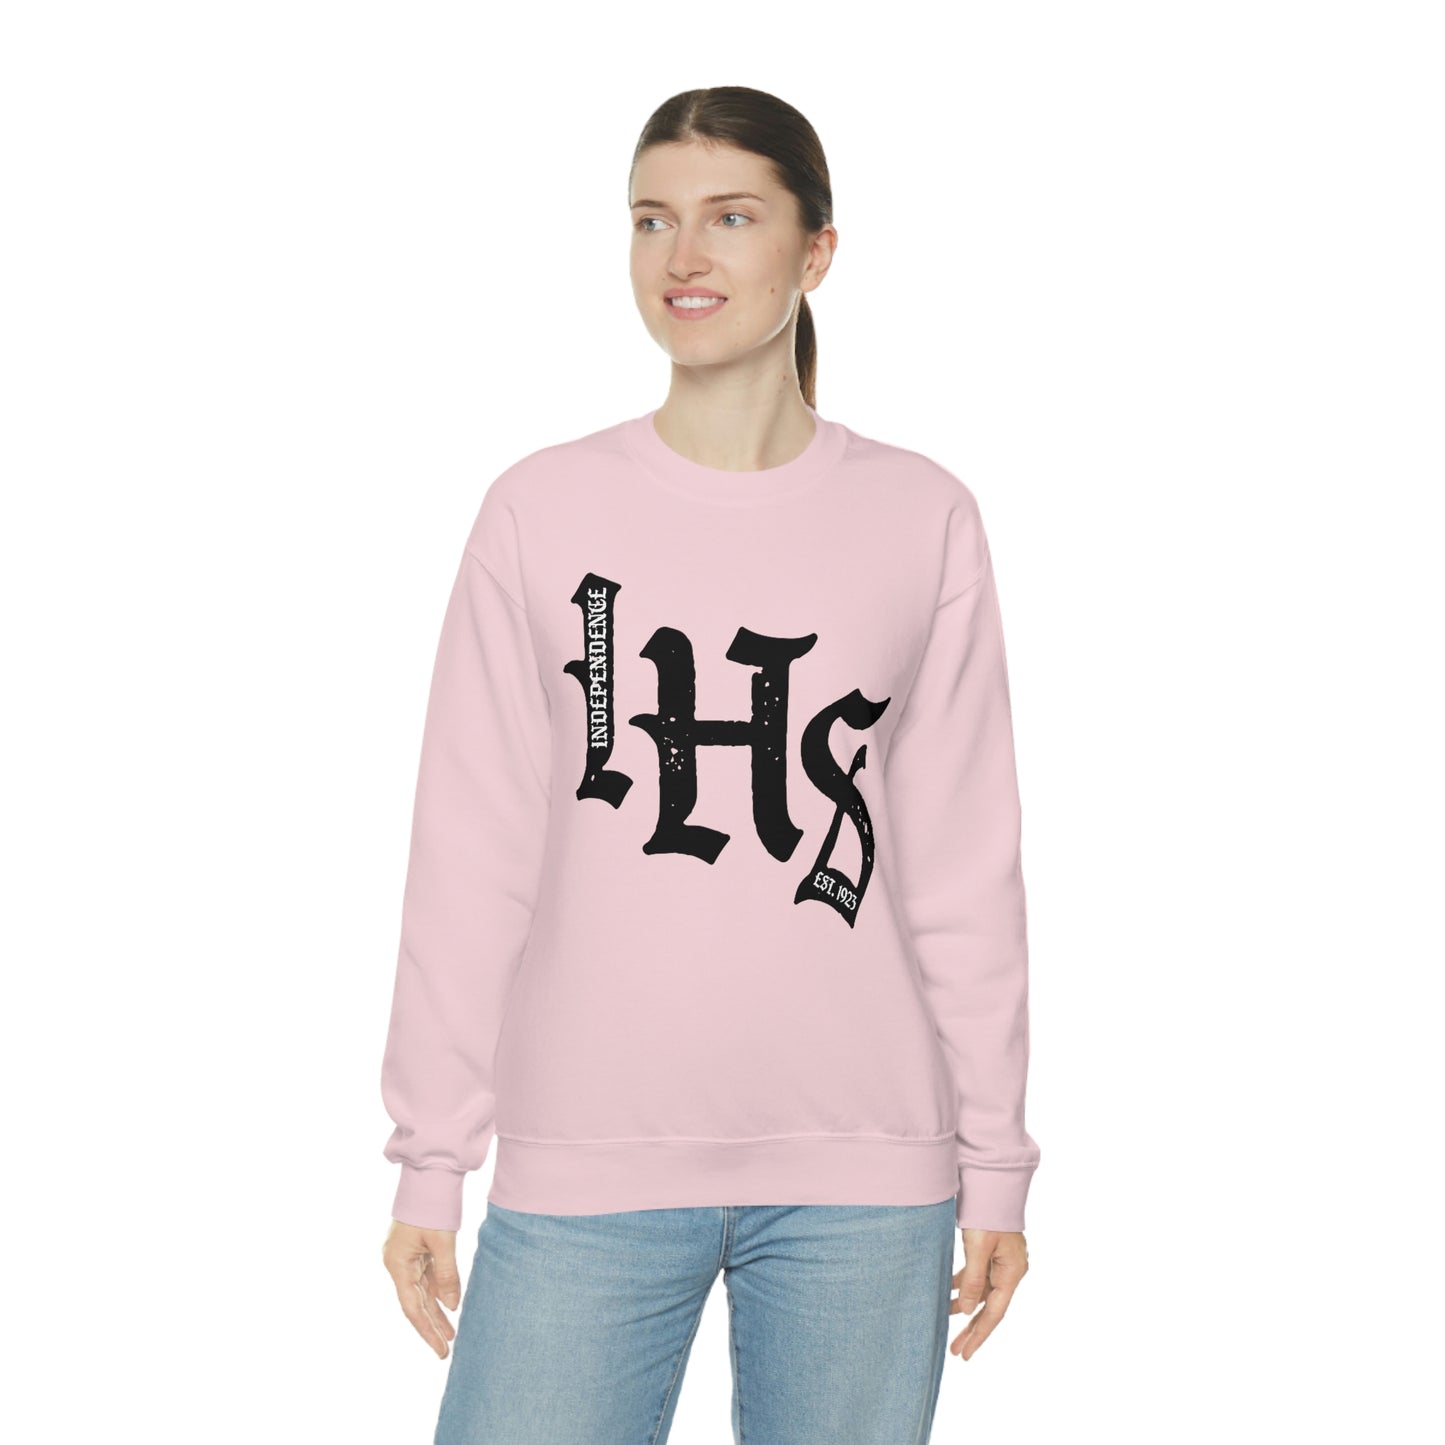 IHS - Crewneck Sweatshirt